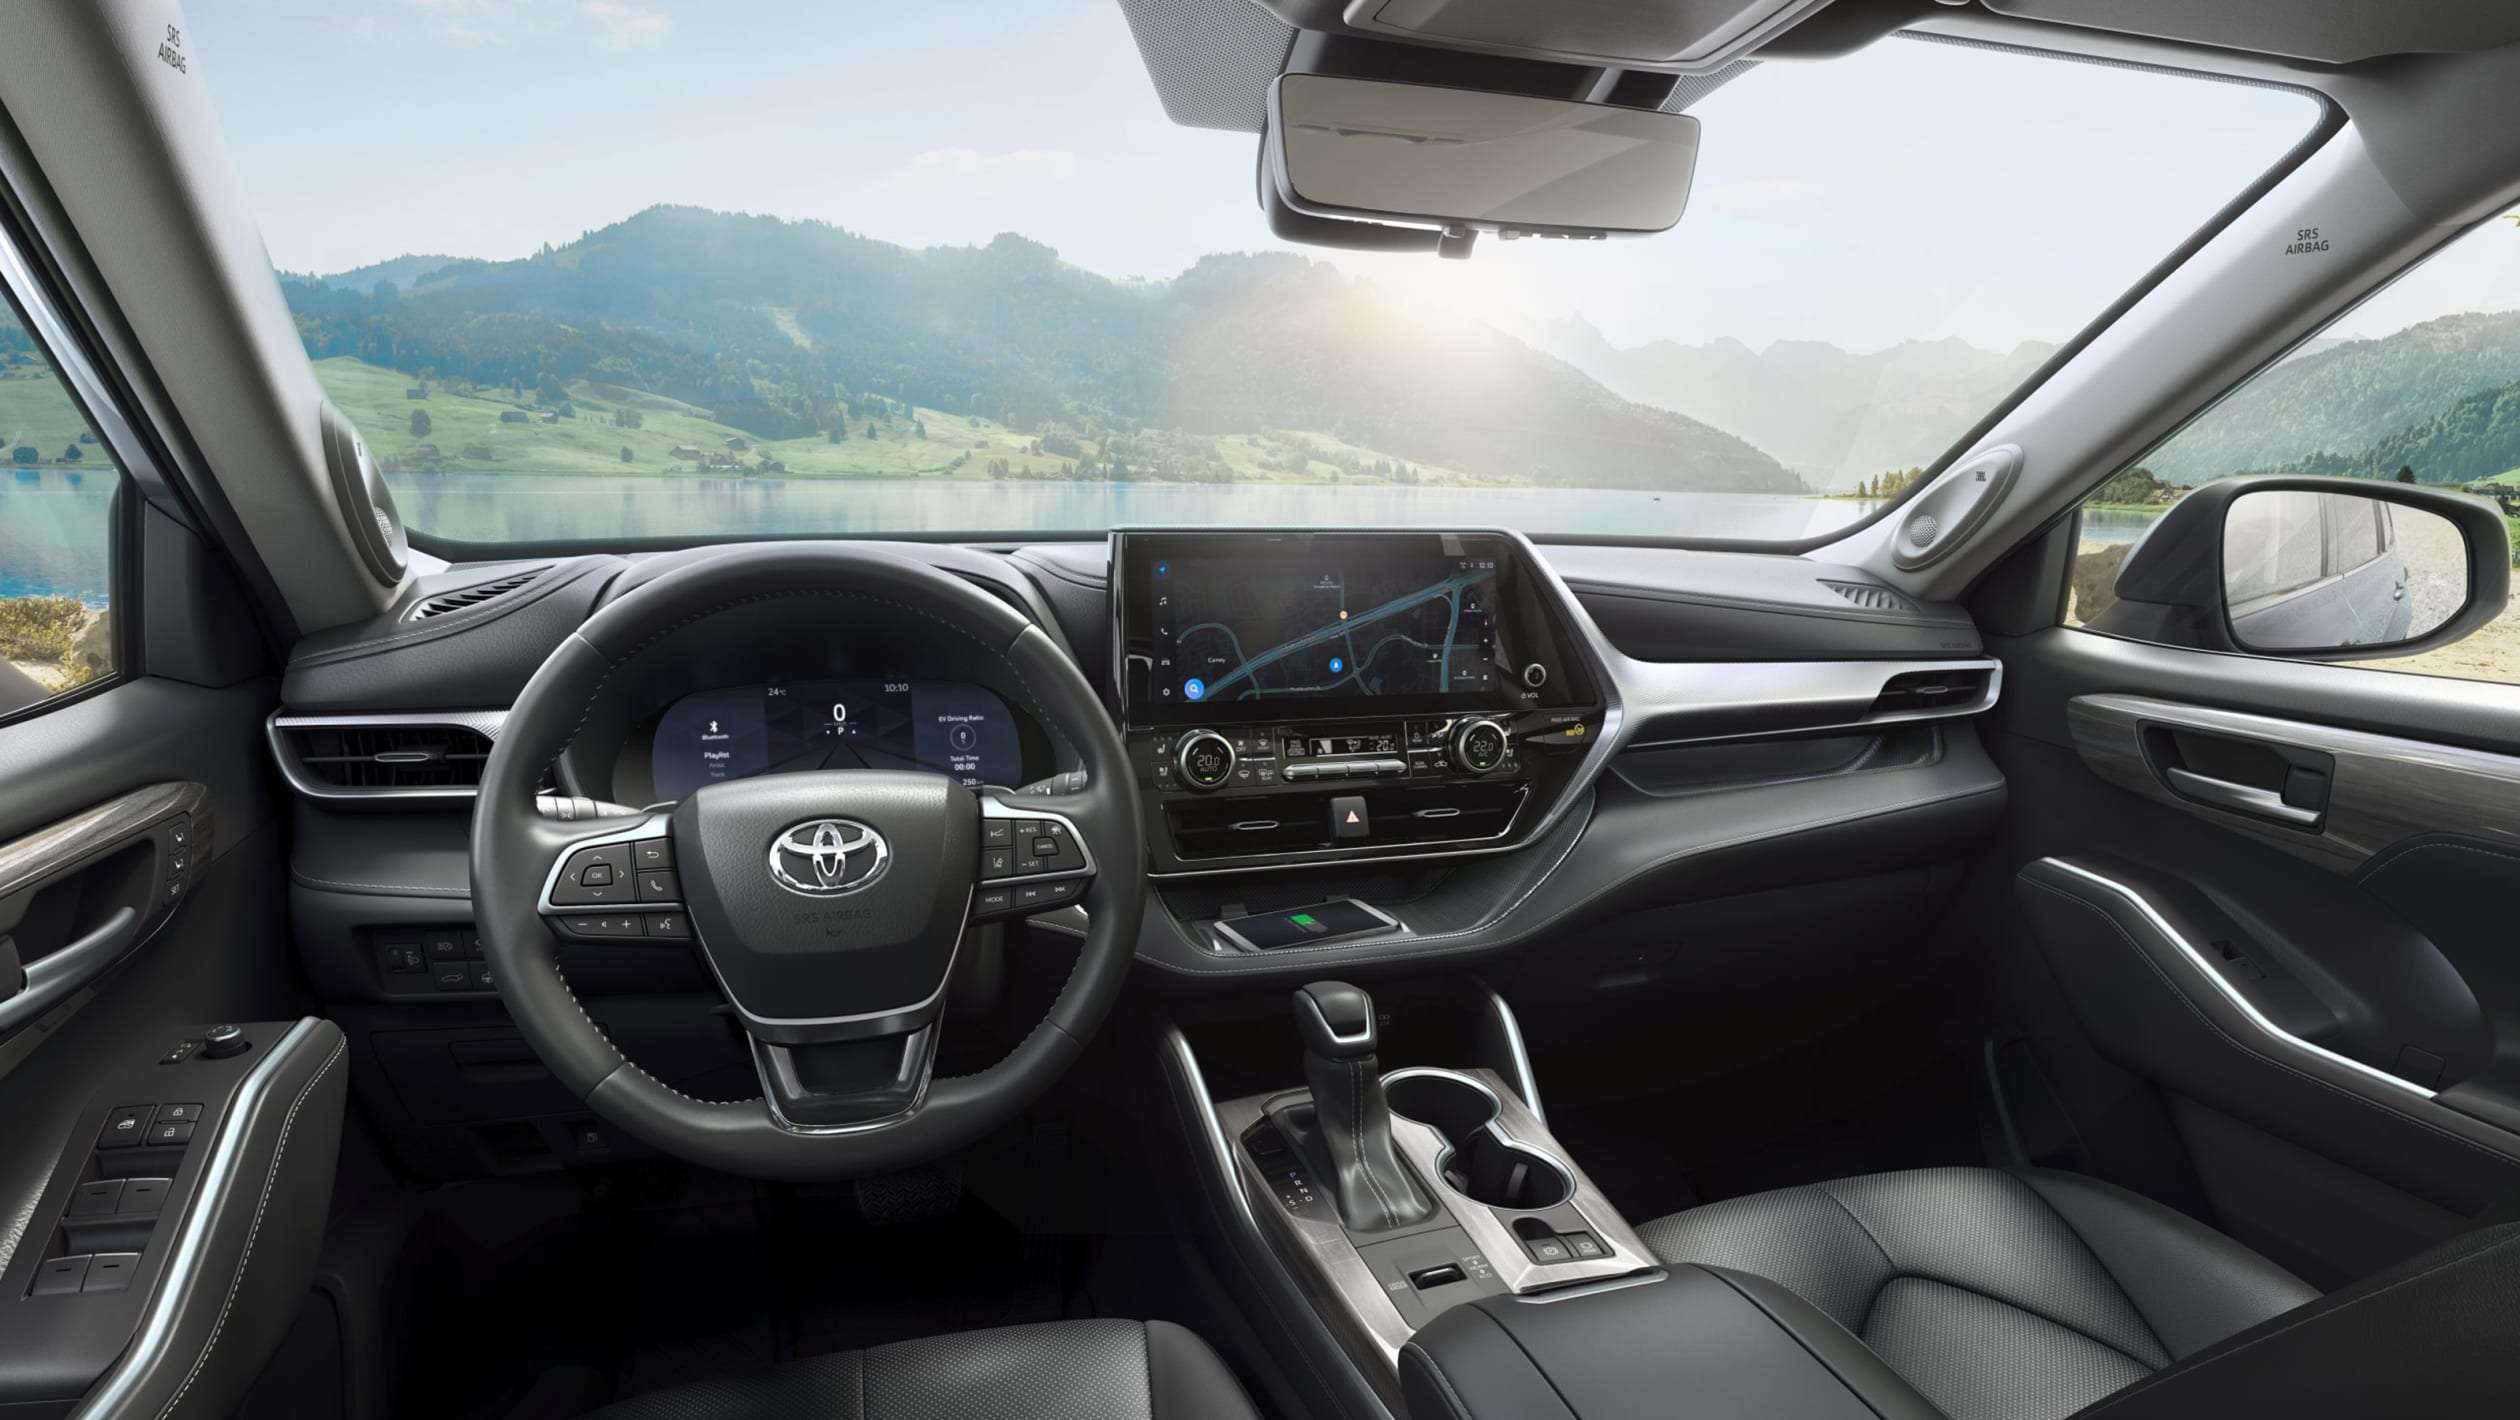 Toyota Highlander tech updates - interior